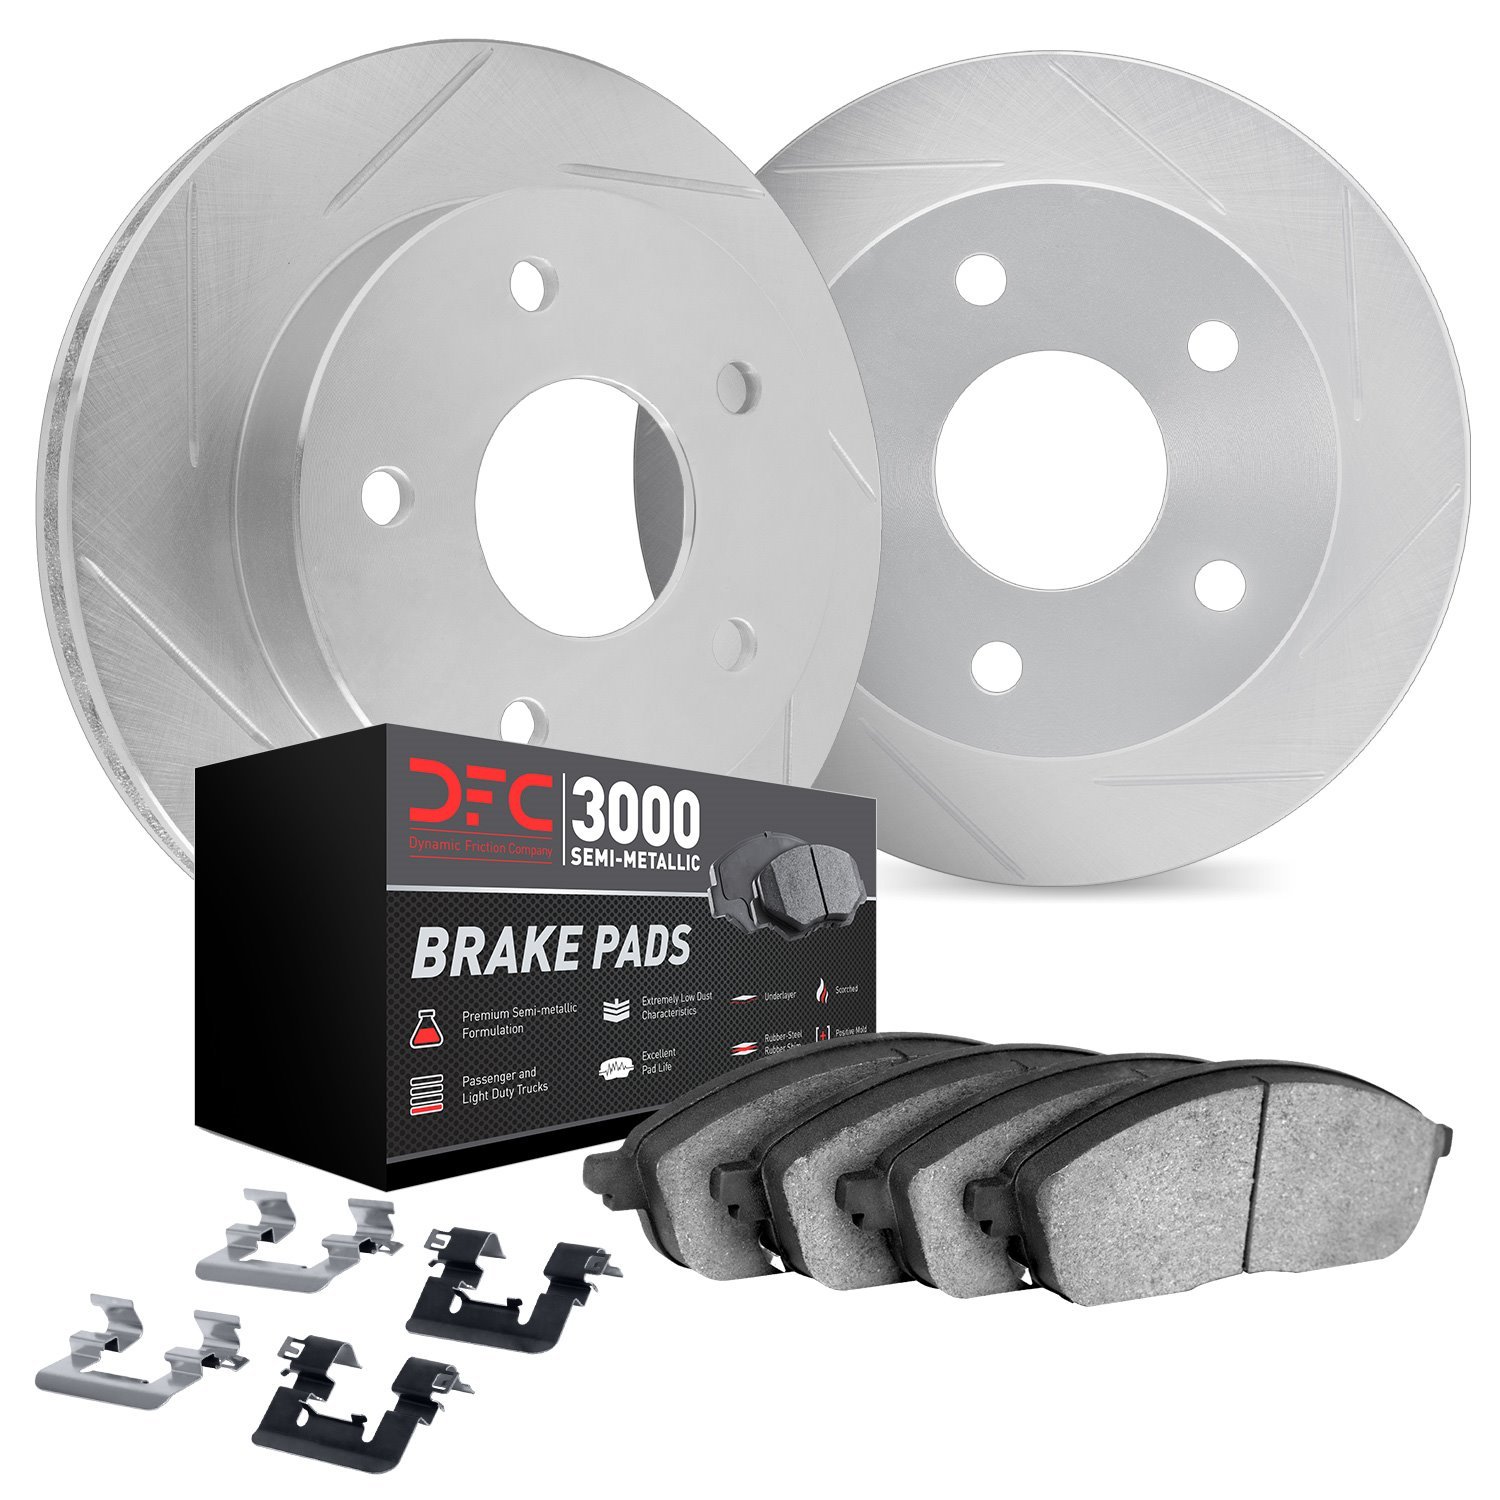 5112-63147 Slotted Brake Rotors with 3000-Series Semi-Metallic Brake Pads Kit & Hardware [Silver], 2012-2018 Mercedes-Benz, Posi